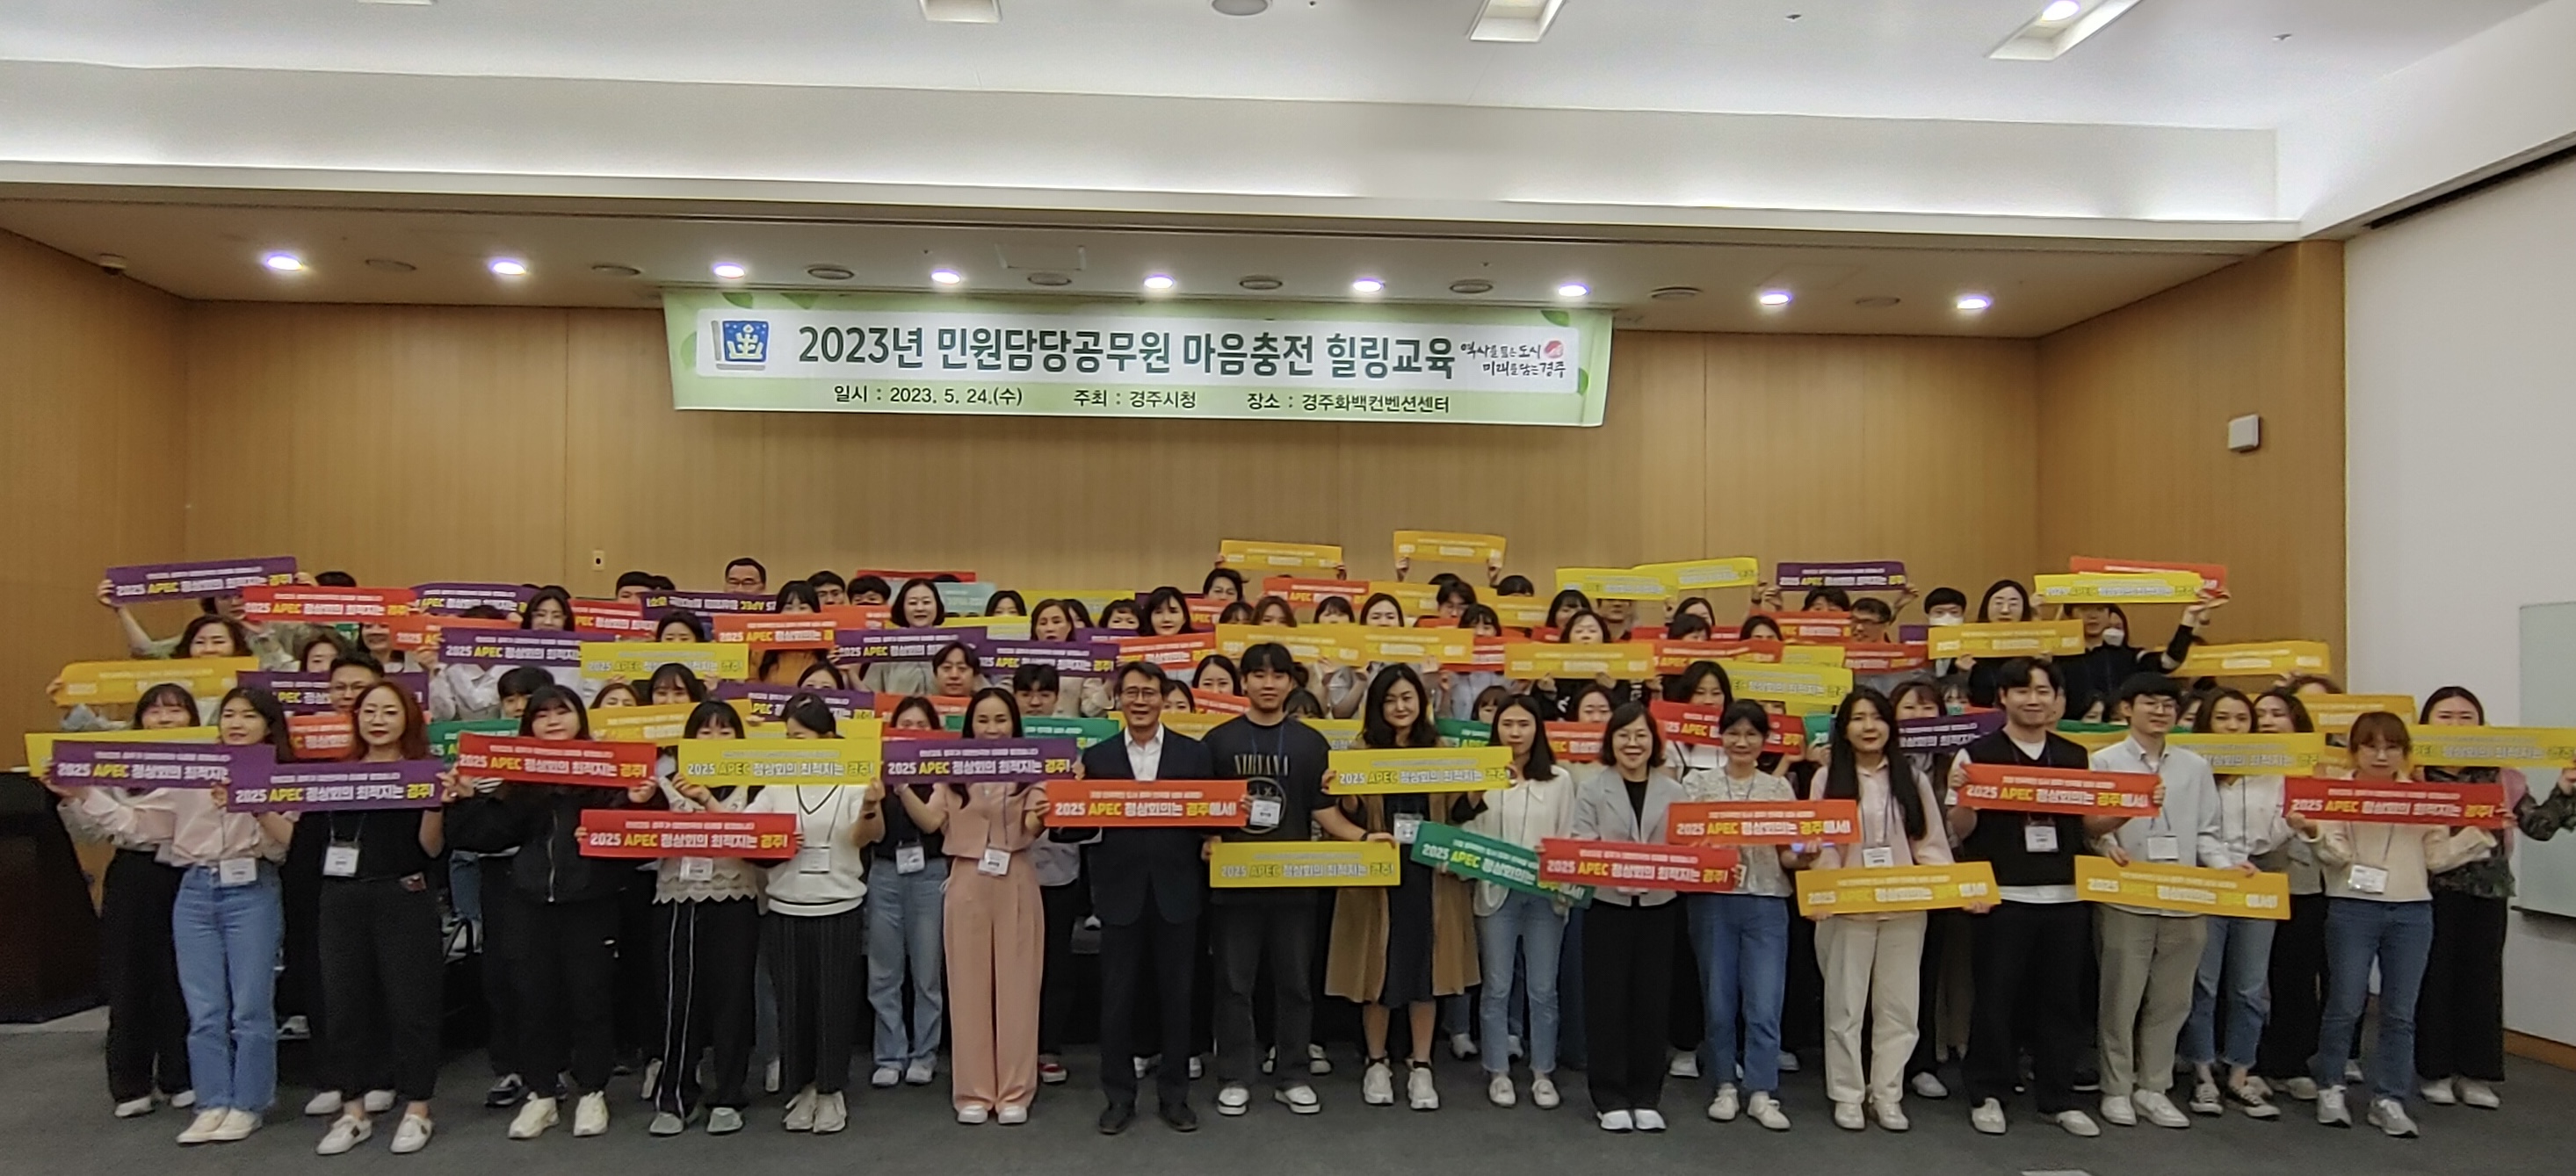 24일 김성학 부시장과 민원담당 공무원들이 화백컨벤션센터에서 열린 민원담당 힐링교육 후 2025 APEC 정상회의 경주유치 퍼포먼스를 펼치고 있다.